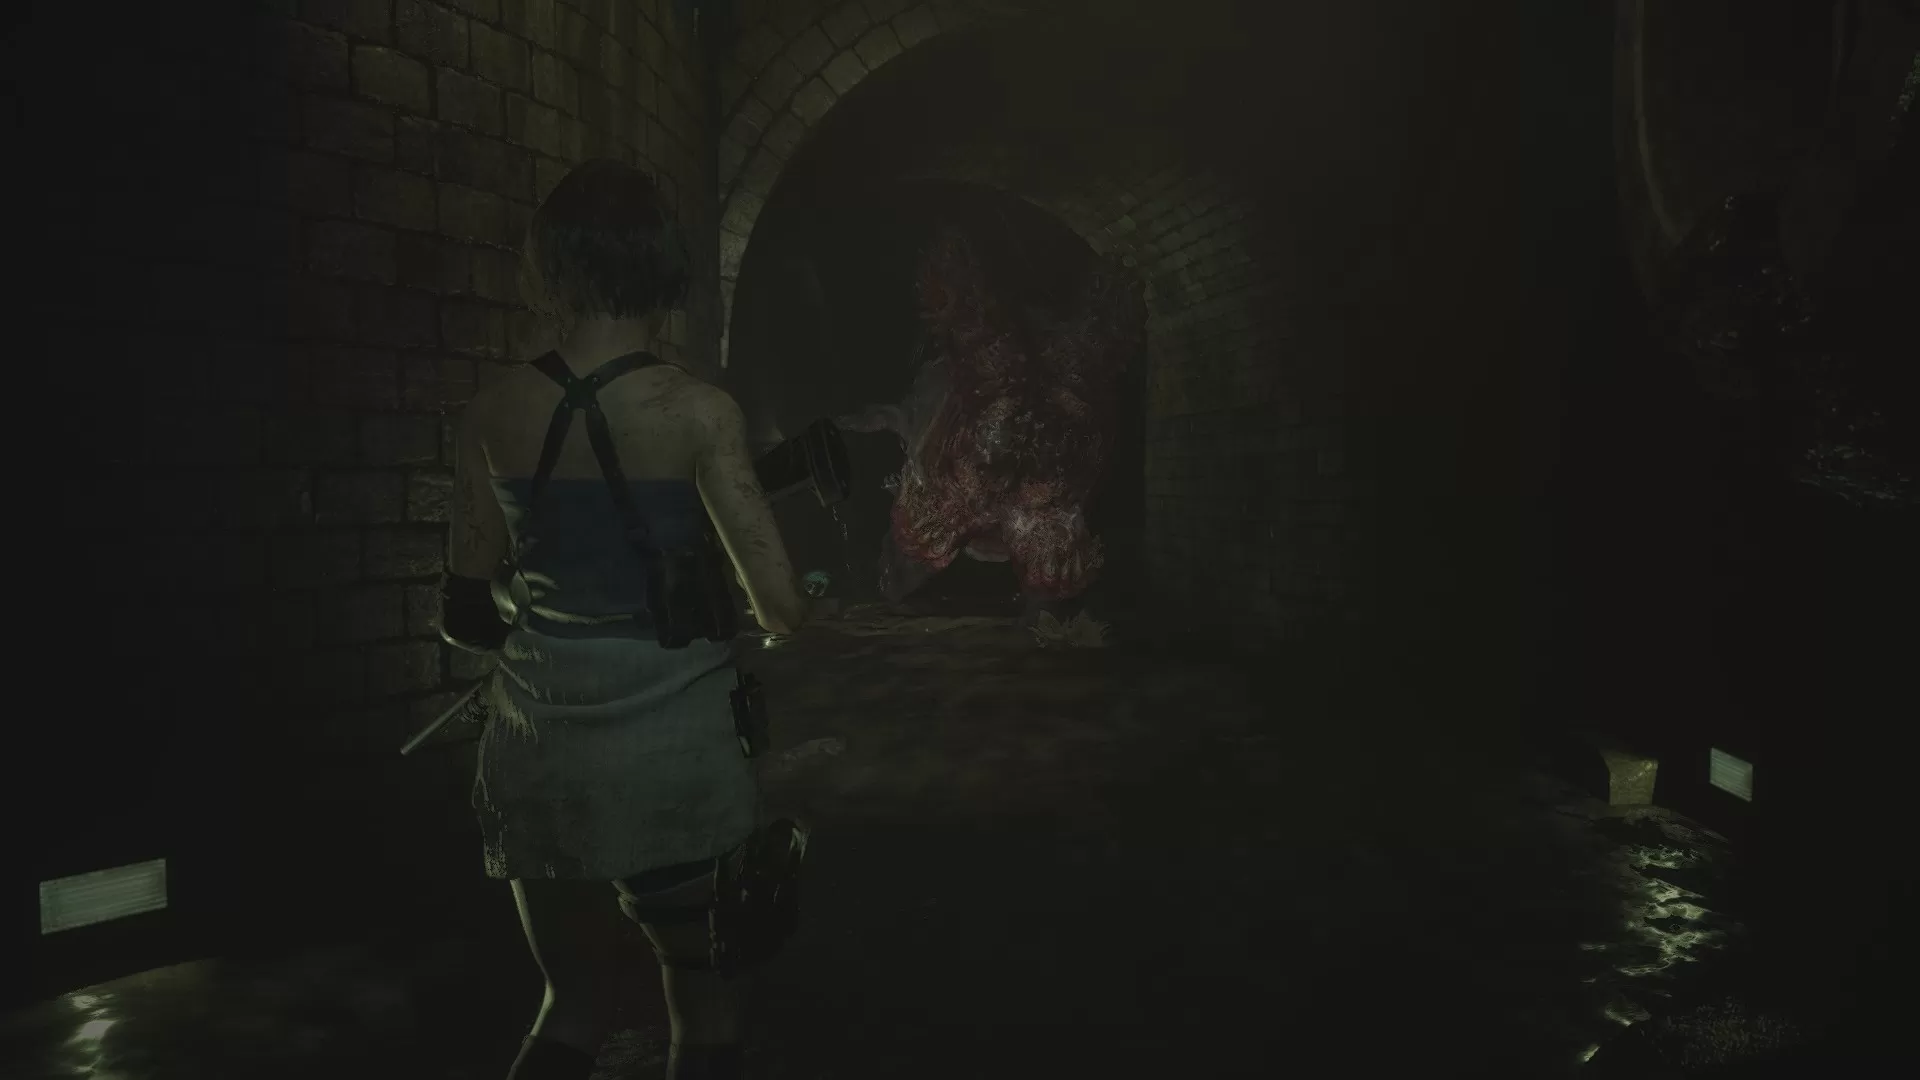 Resident Evil 3 (Remake) обзор